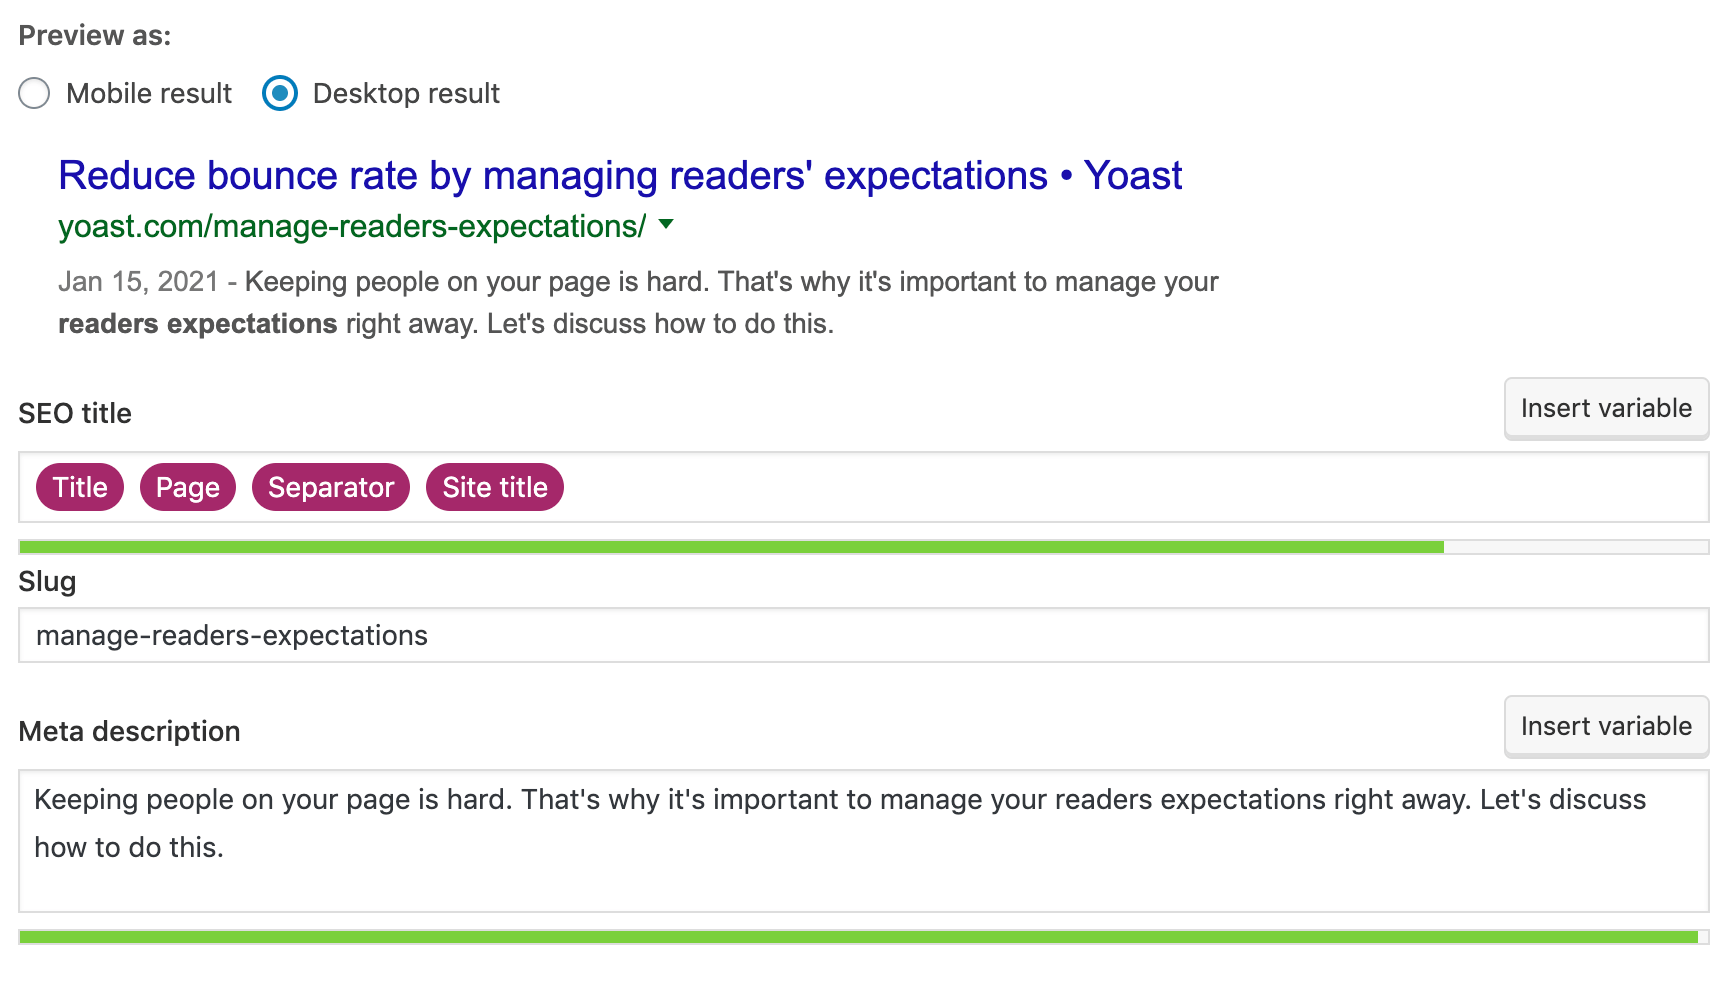 Yoast SEO desktop search engine preview